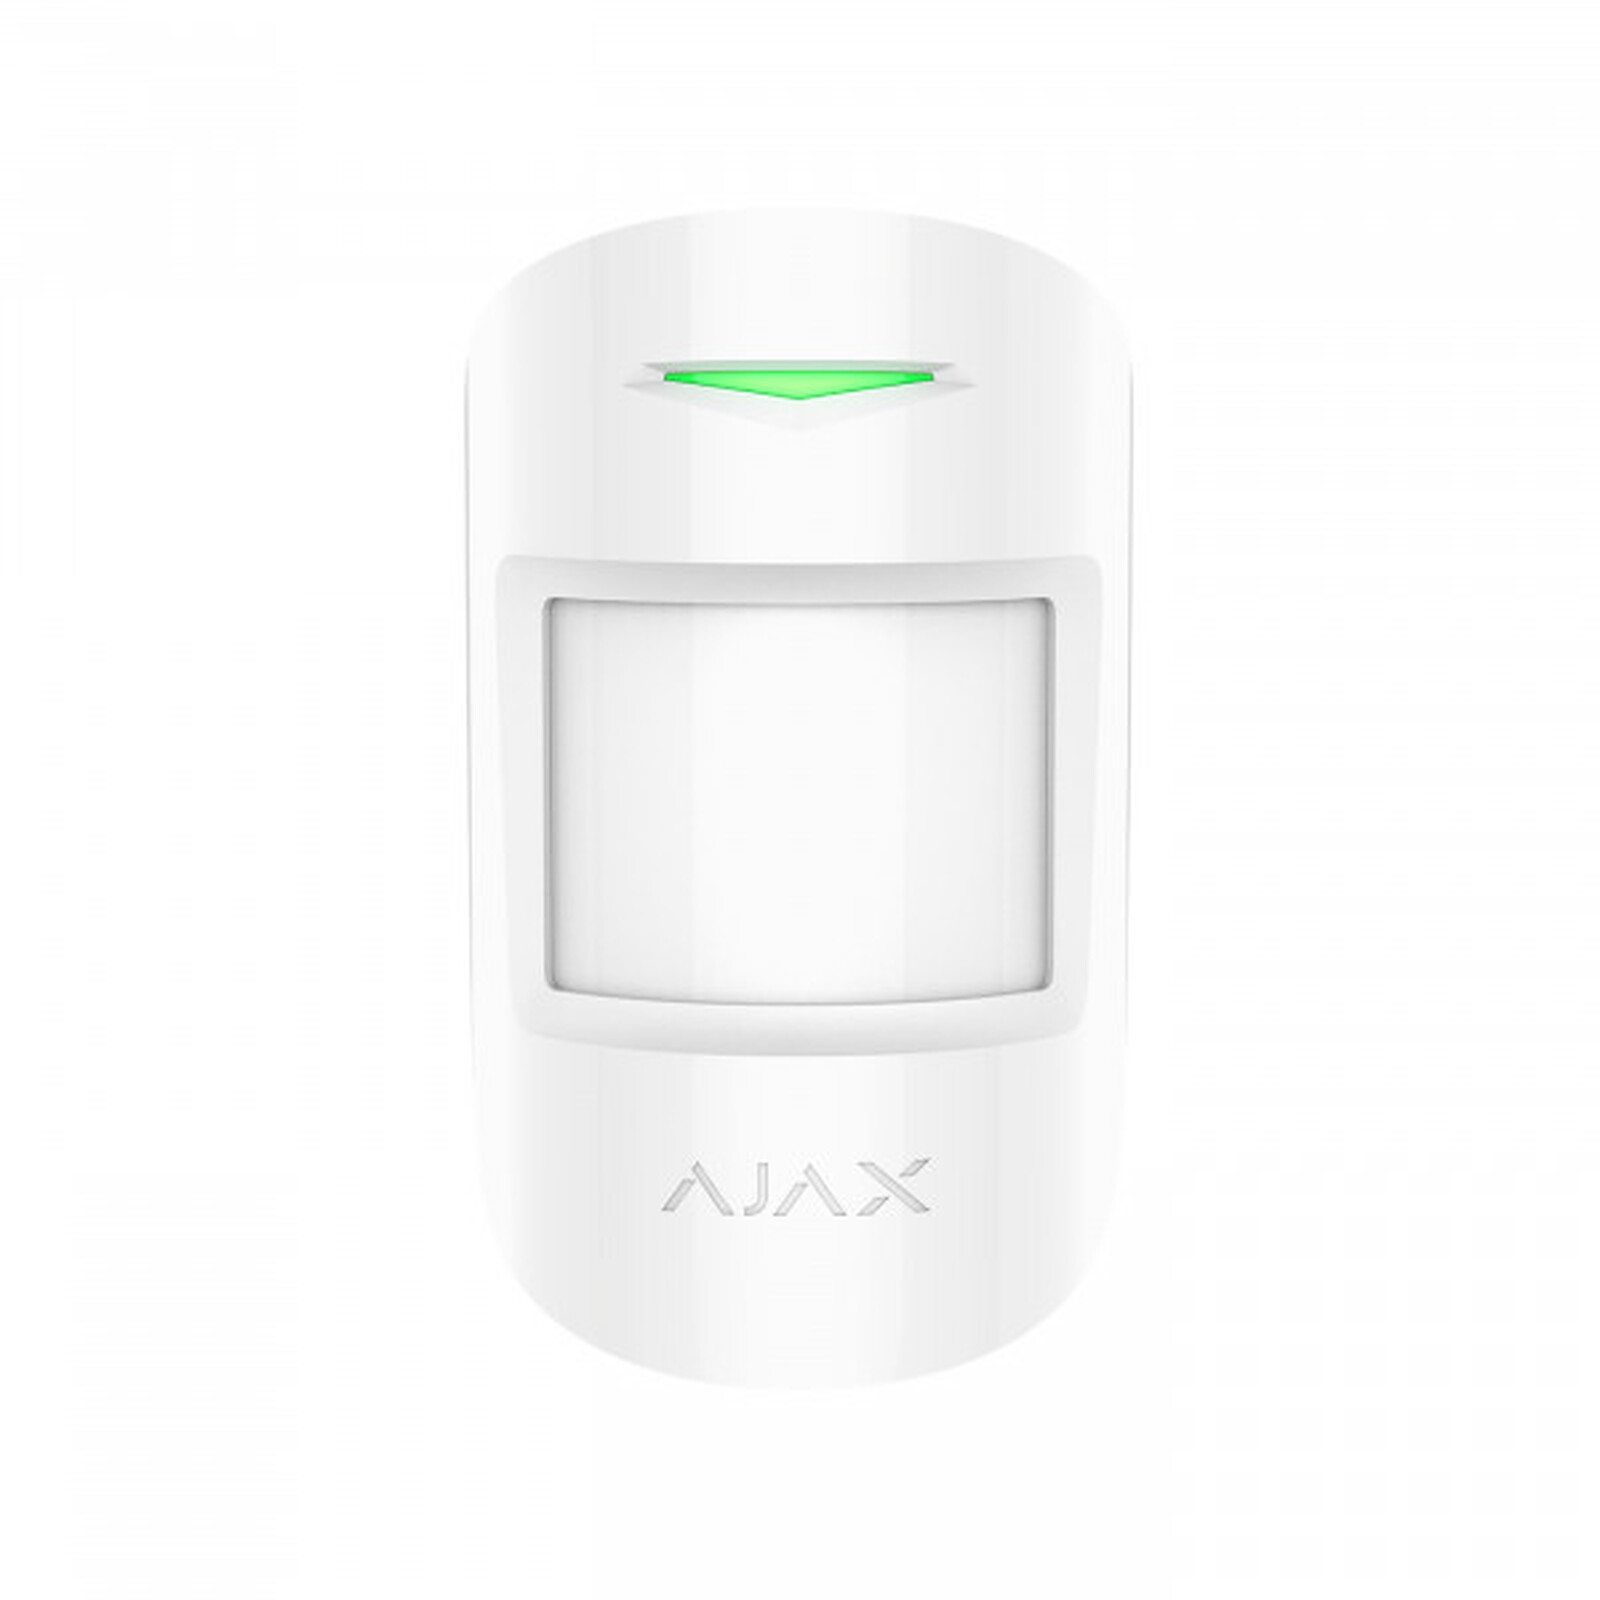 Accessoires pour alarme sans fil Ajax